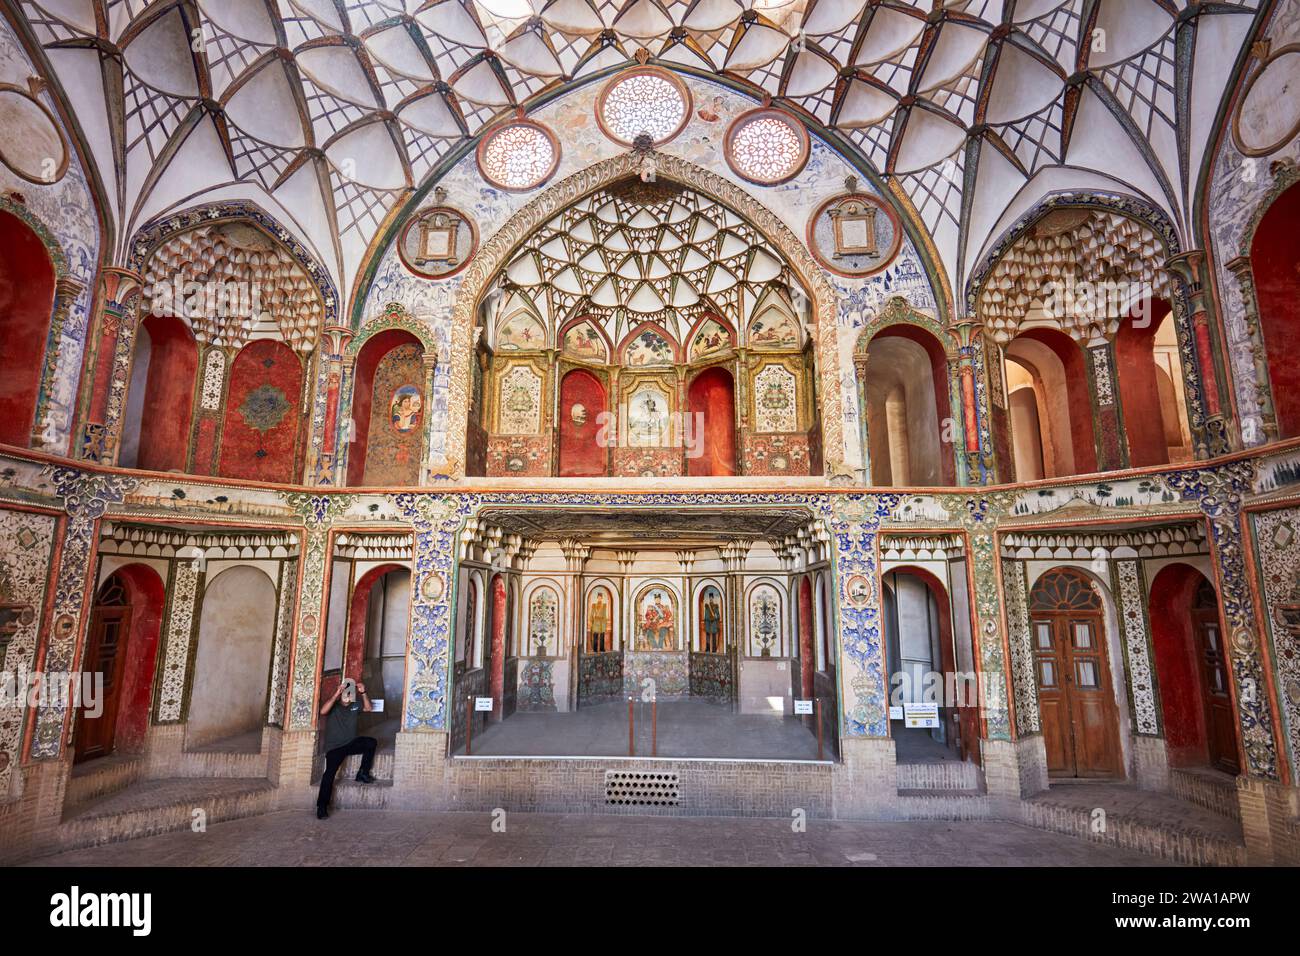 Salle principale richement décorée dans Borujerdi House, riche maison traditionnelle persane construite en 1857. Kashan, Iran. Banque D'Images